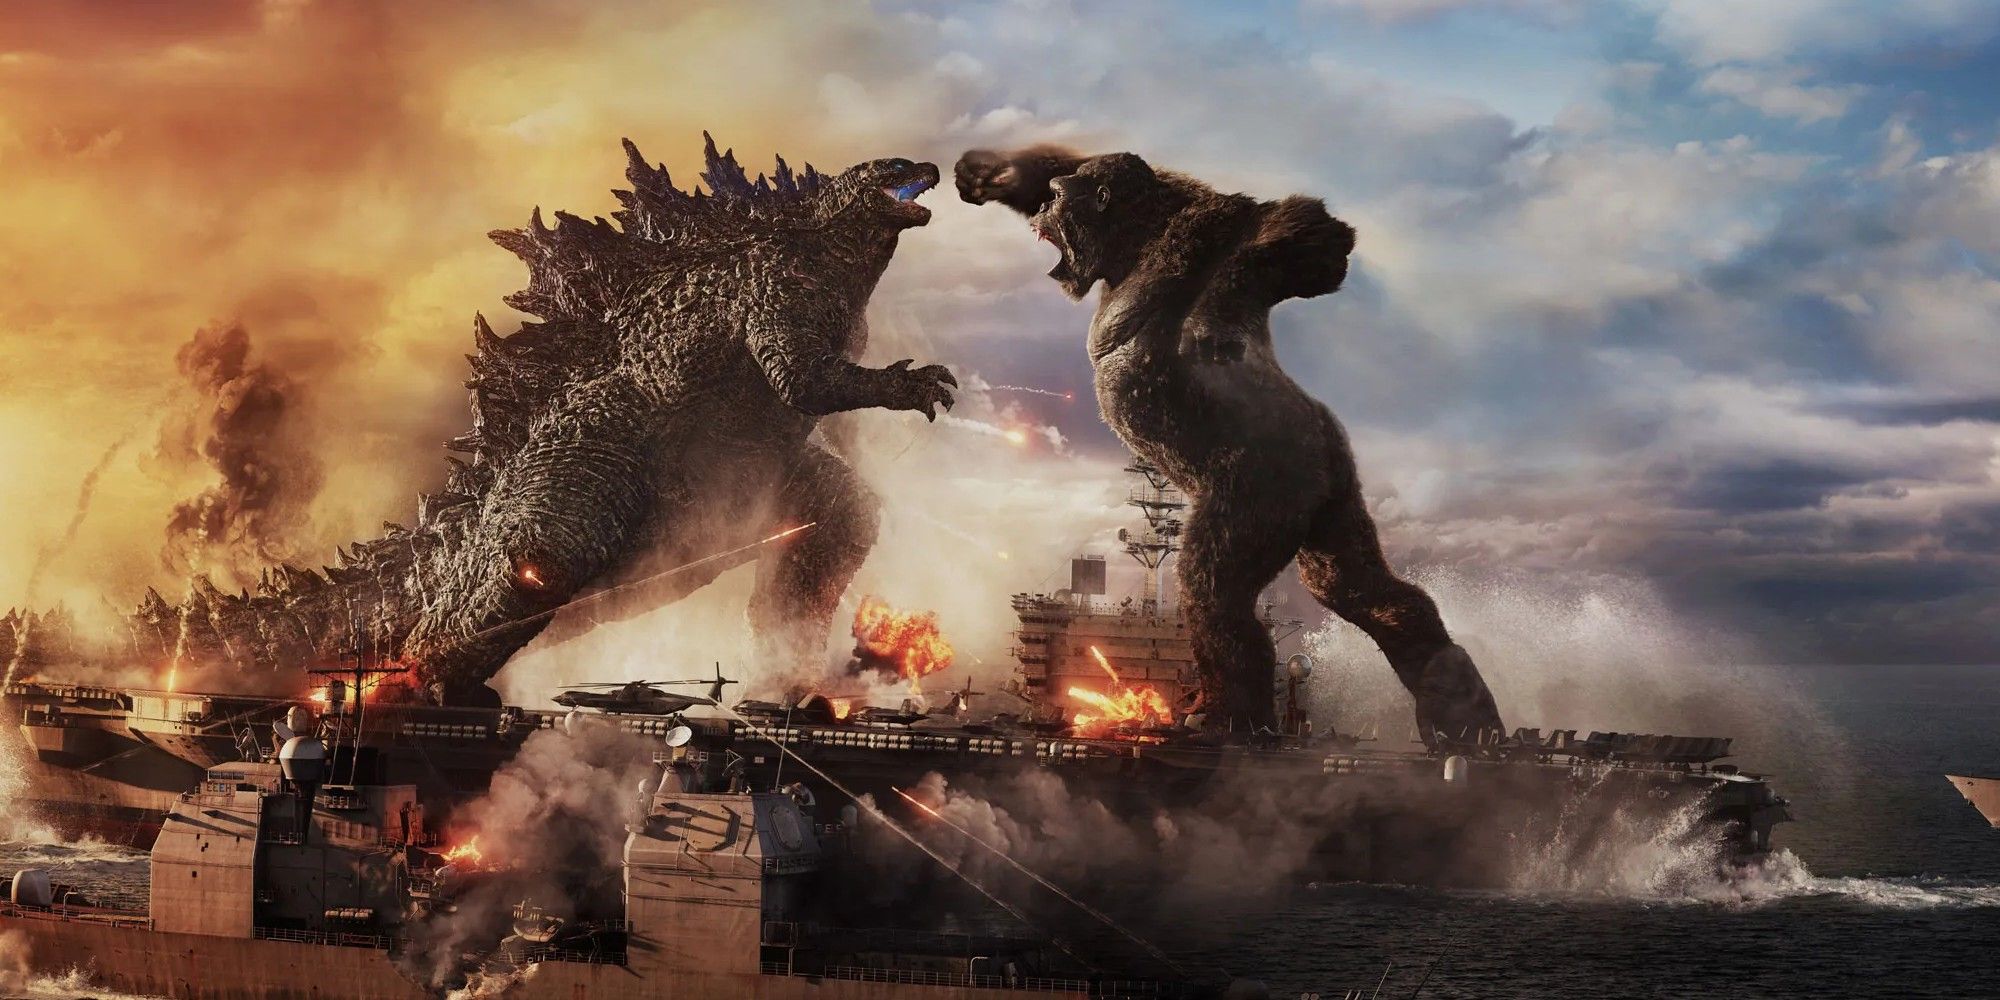 Godzilla and King Kong in Godzilla vs. Kong